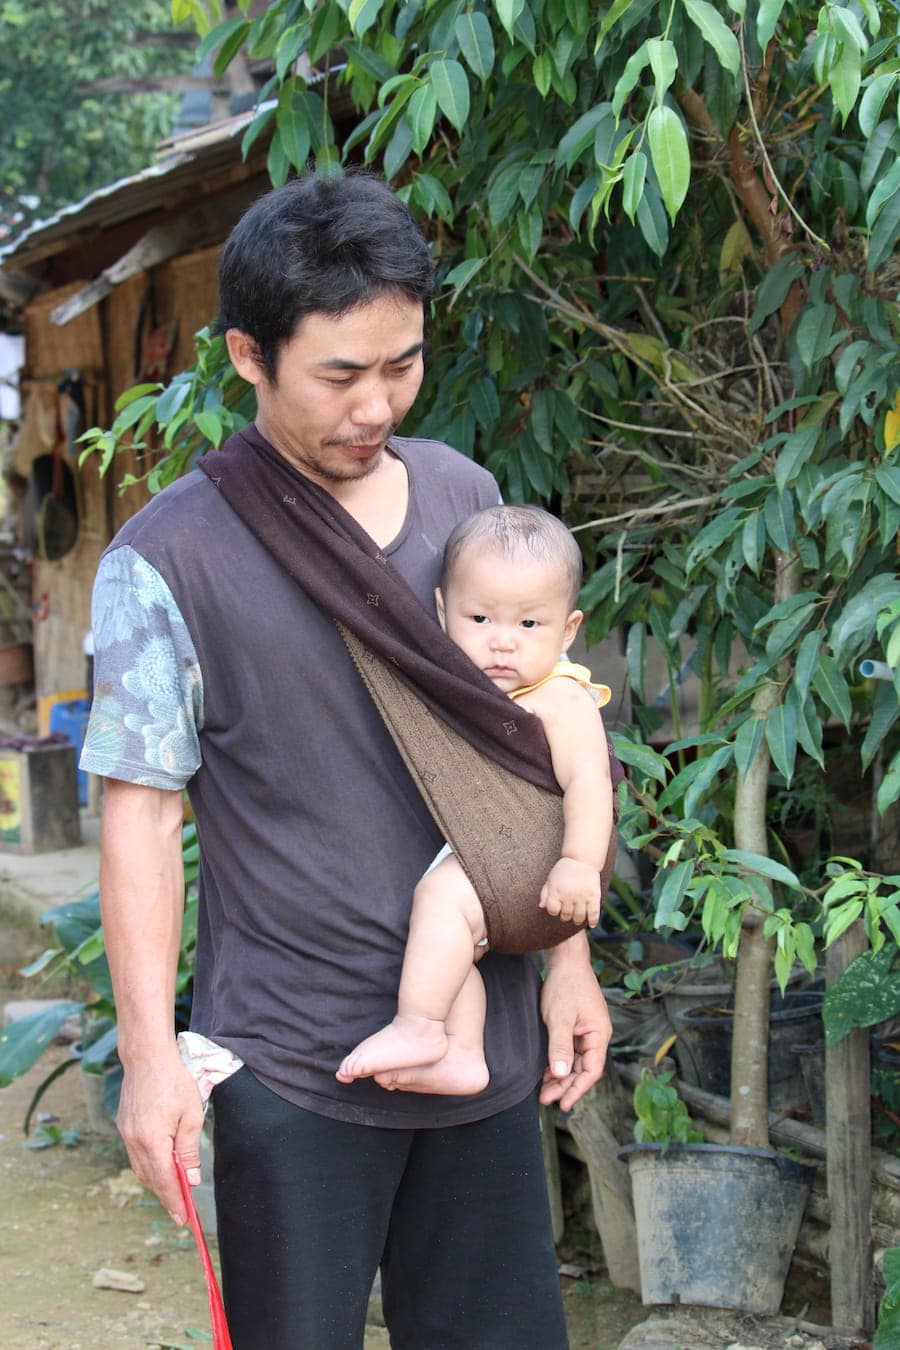 Hommes s'occupent des enfants dans les tribus du nord de la Thaïlande dans notre article Road trip au nord de la Thaïlande à la rencontre des tribus des montagnes #thailande #nord #tribu #peuple #montagnes #roadtrip #asie #voyage